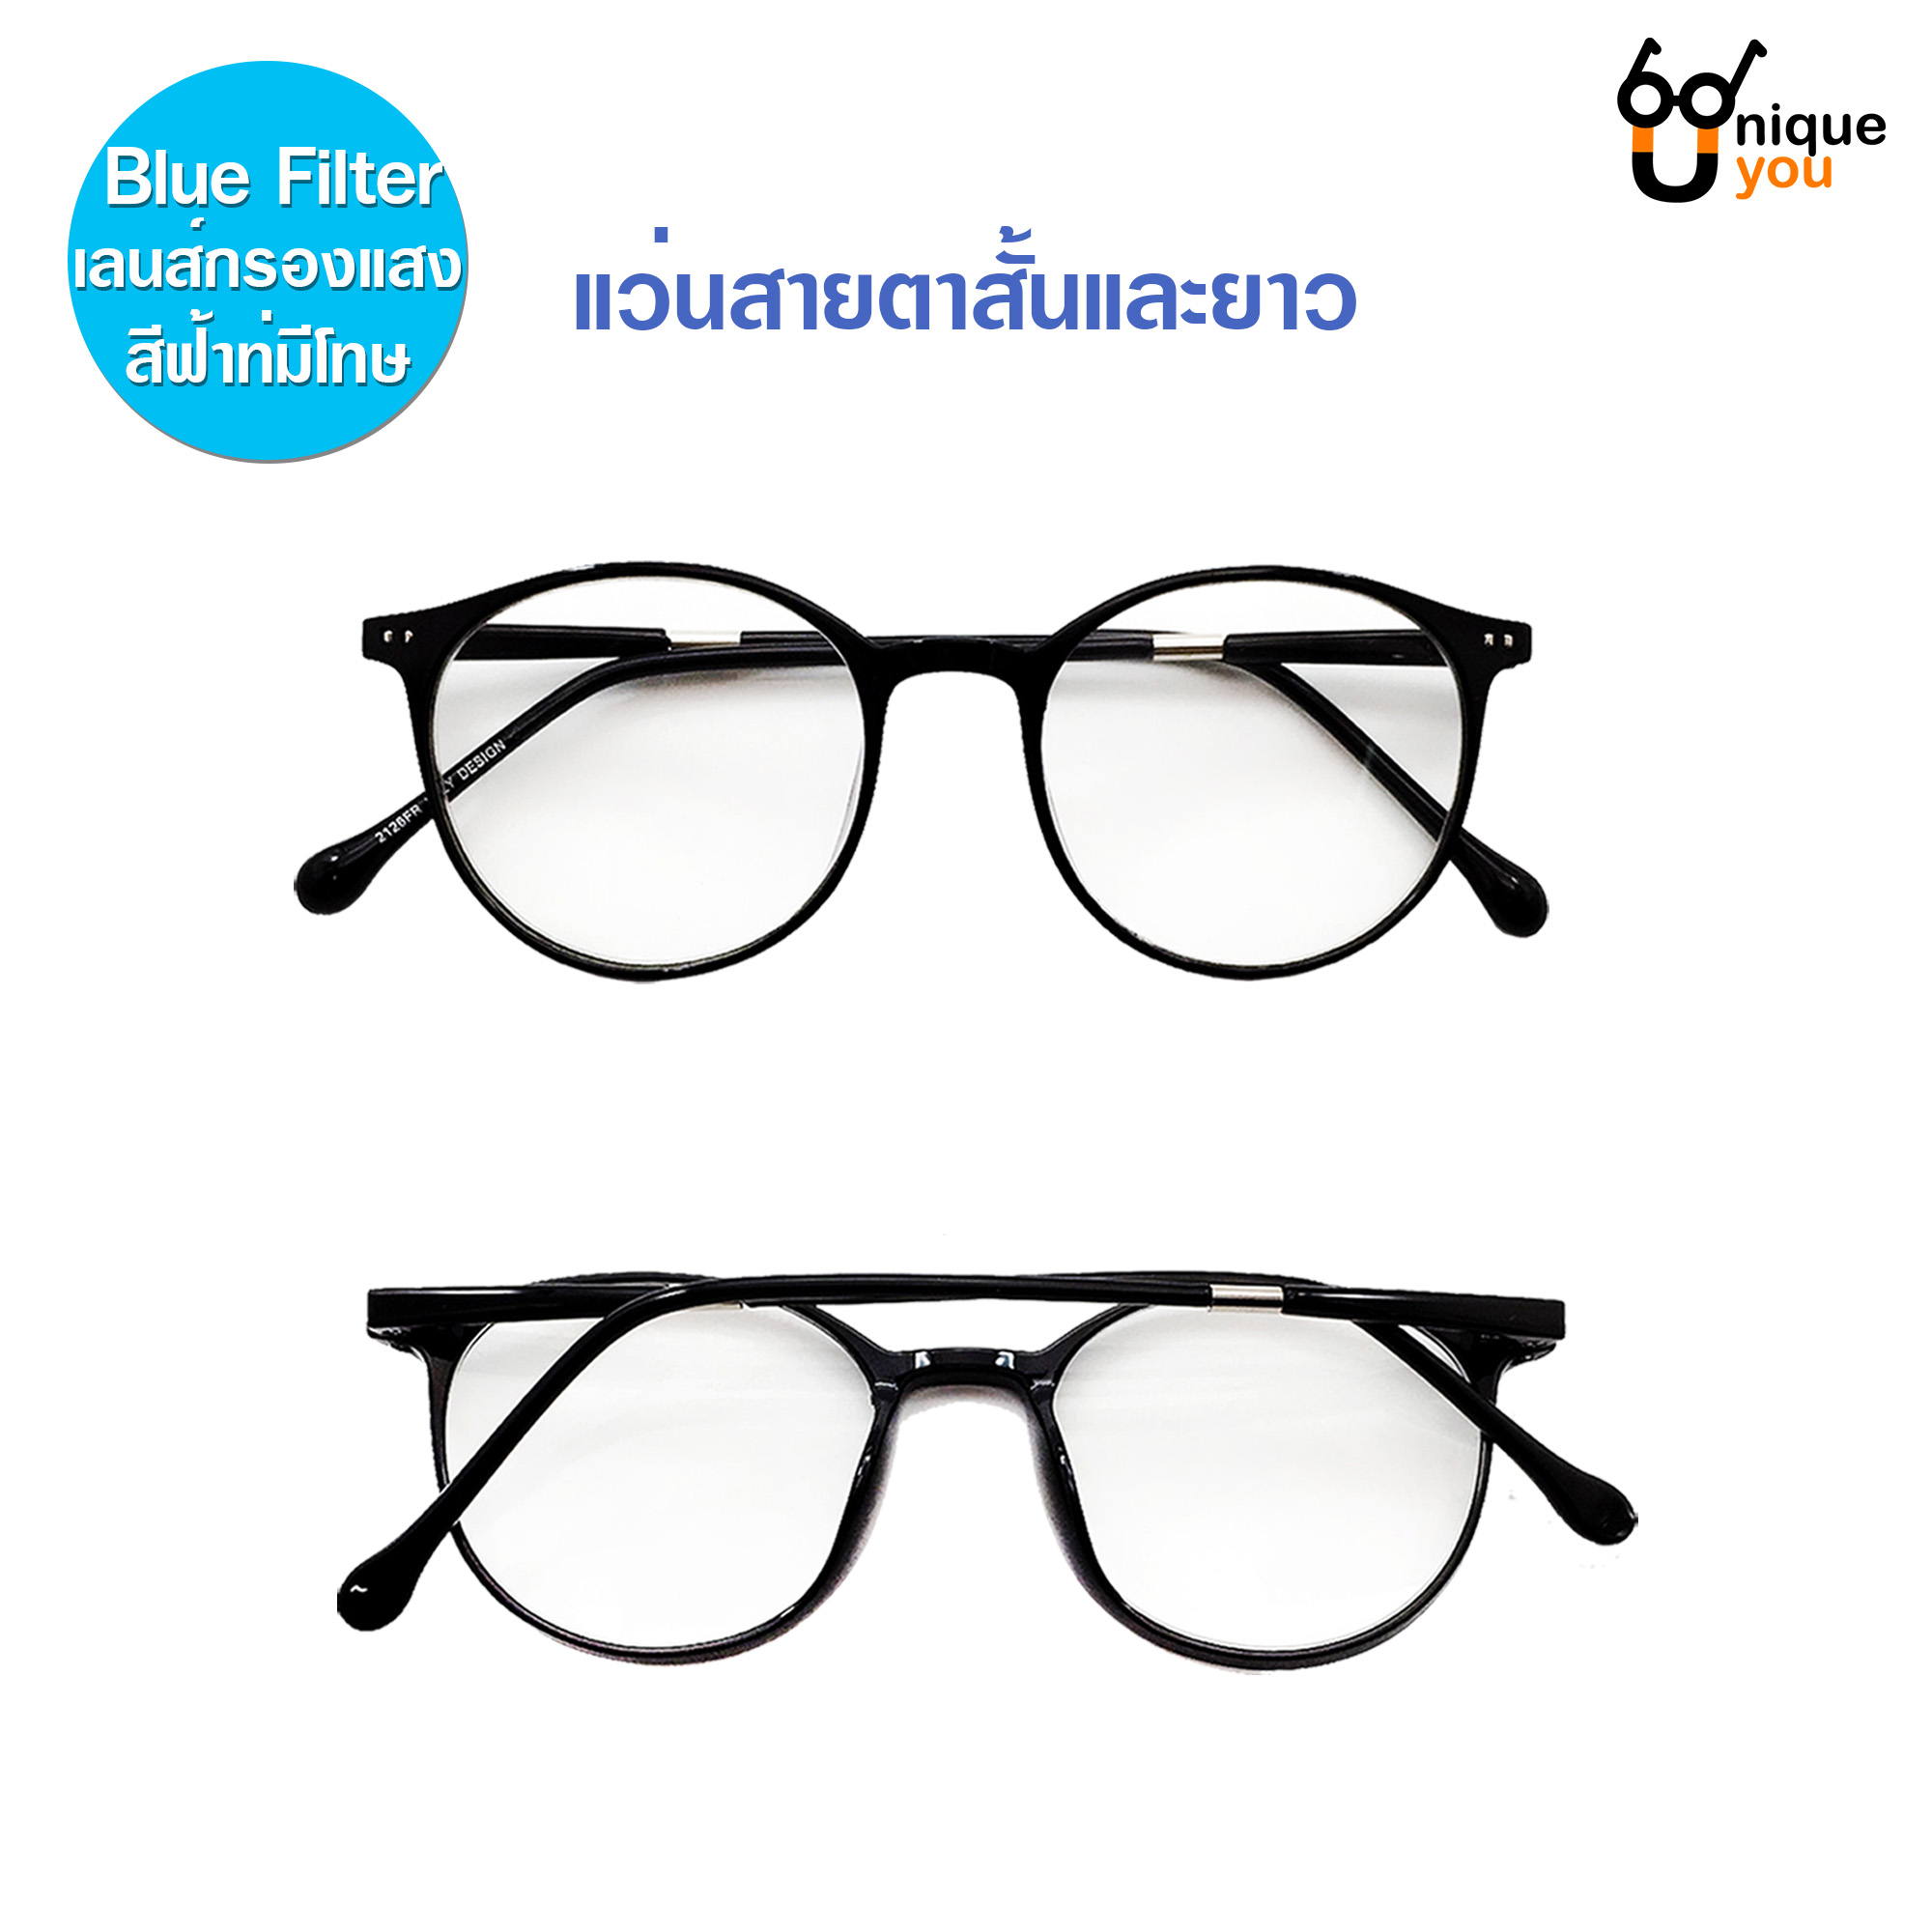 Suboptic แว่นสายตาสั้นและสายตายาว เลนสิ์Blue filter แว่นตากรองแสงสีฟ้าที่มีโทษ พร้อมผ้าเช็ดแว่นและถุงผ้าใส่แว่น